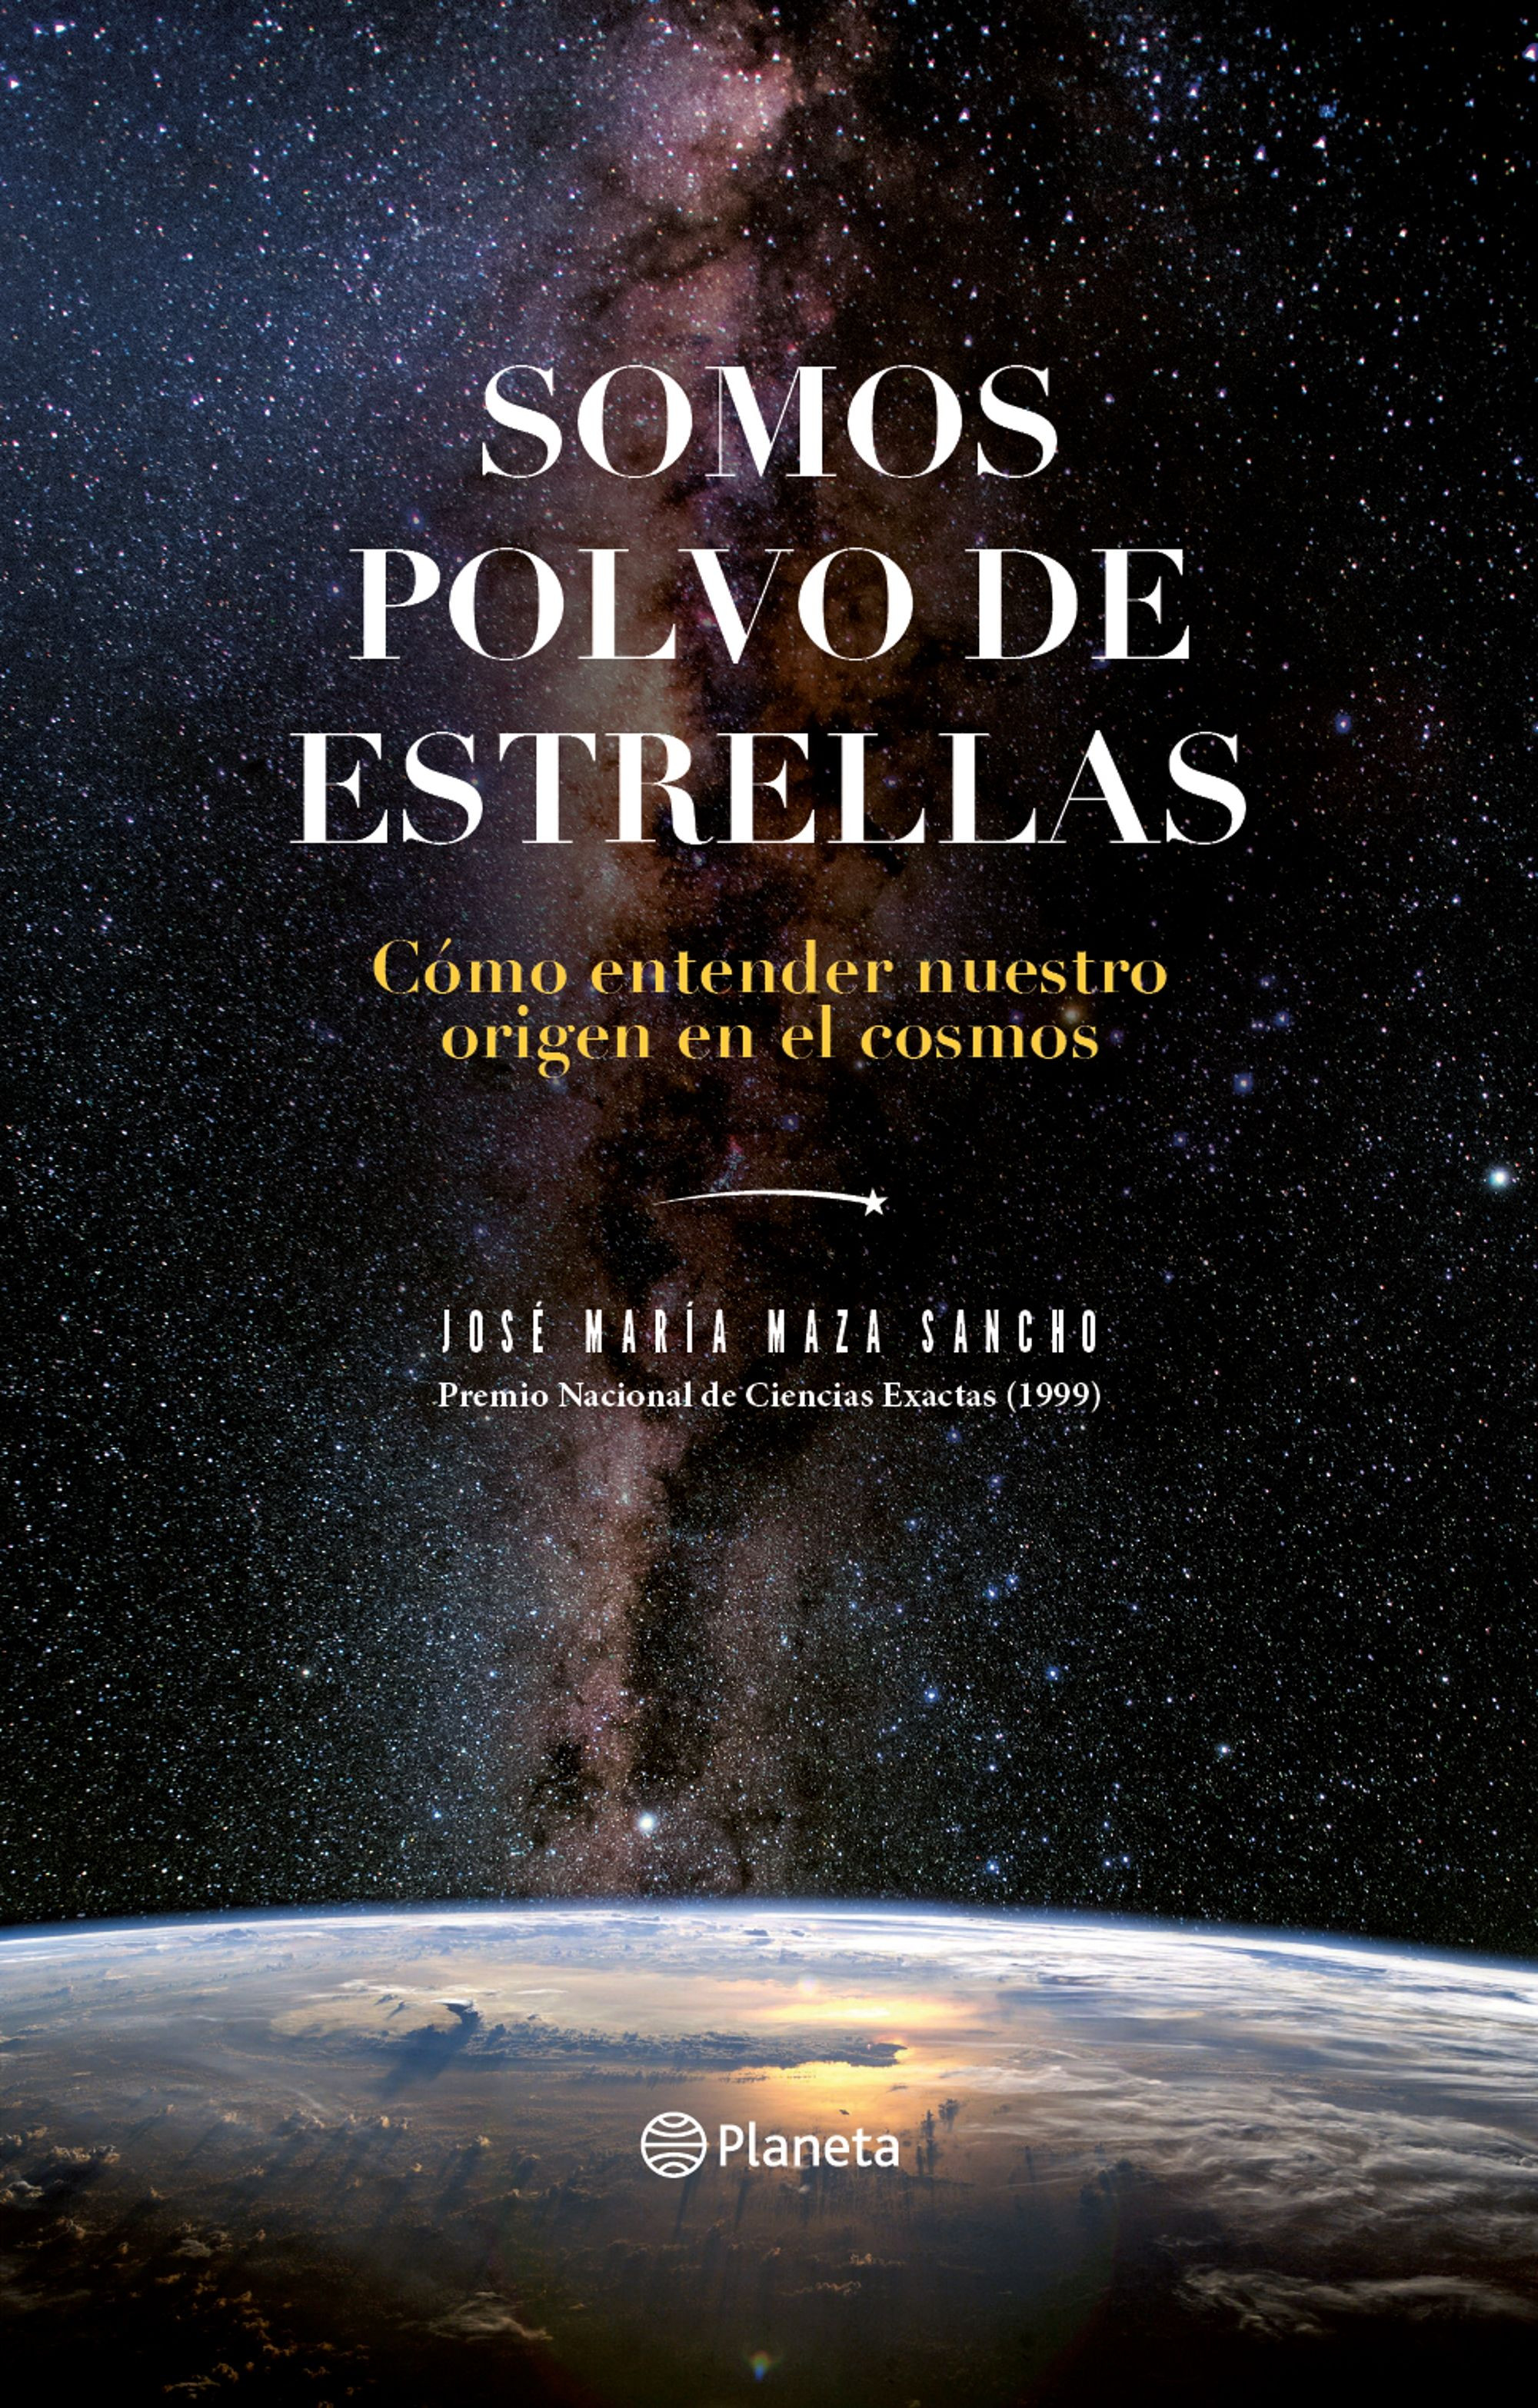 Imagen Somos Polvo de Estrellas. José María Maza